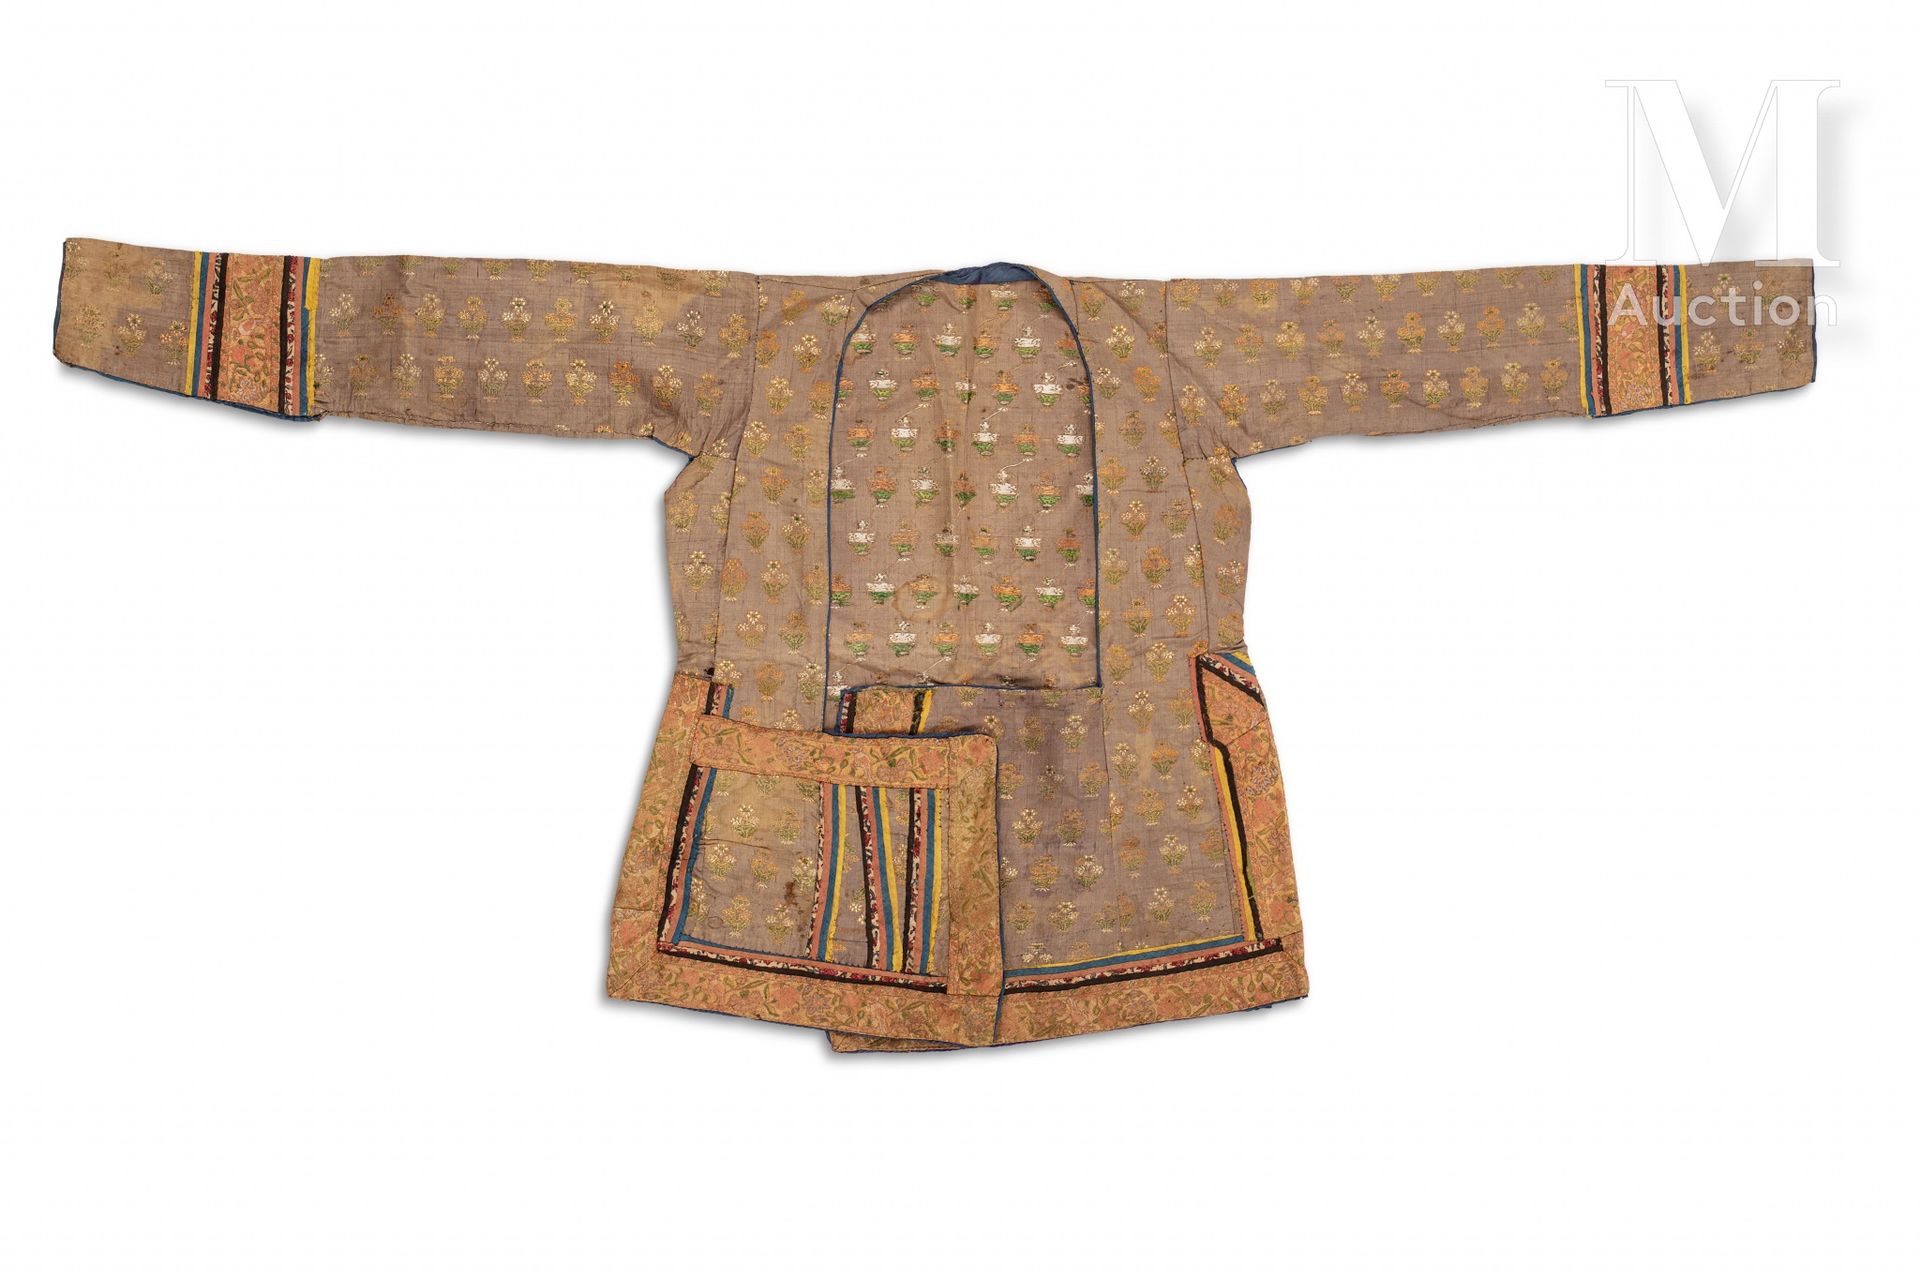 Veste safavide Iran, 18° secolo

Capo con maniche a tre quarti in seta grigia ri&hellip;